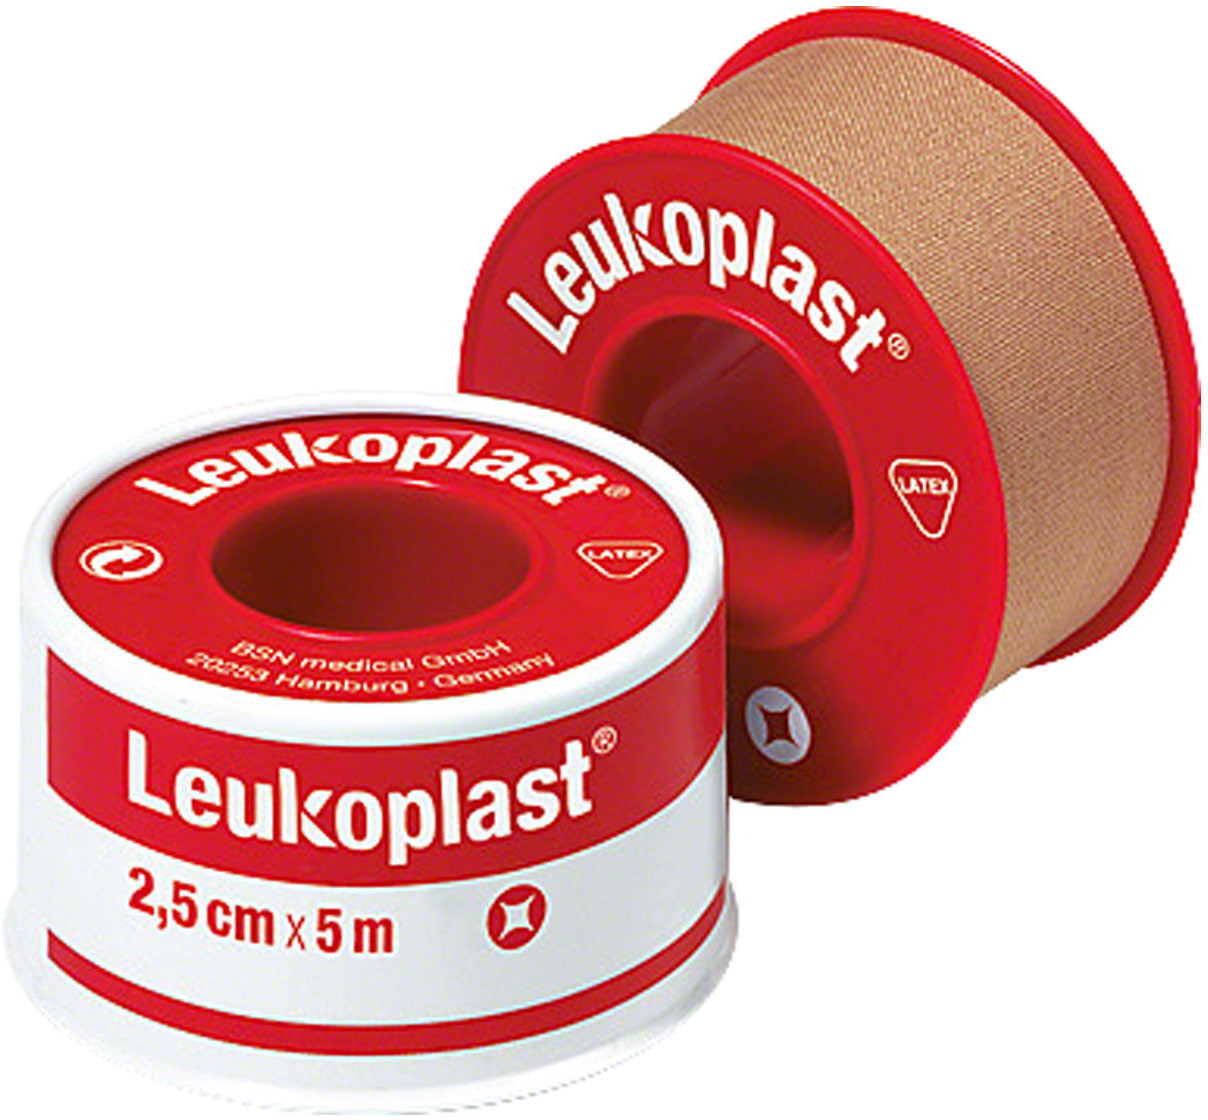 Leukosilk® 2,5 cm x 5 m mit Schutzring Radtke Medical 12 Stück, 26,99 €